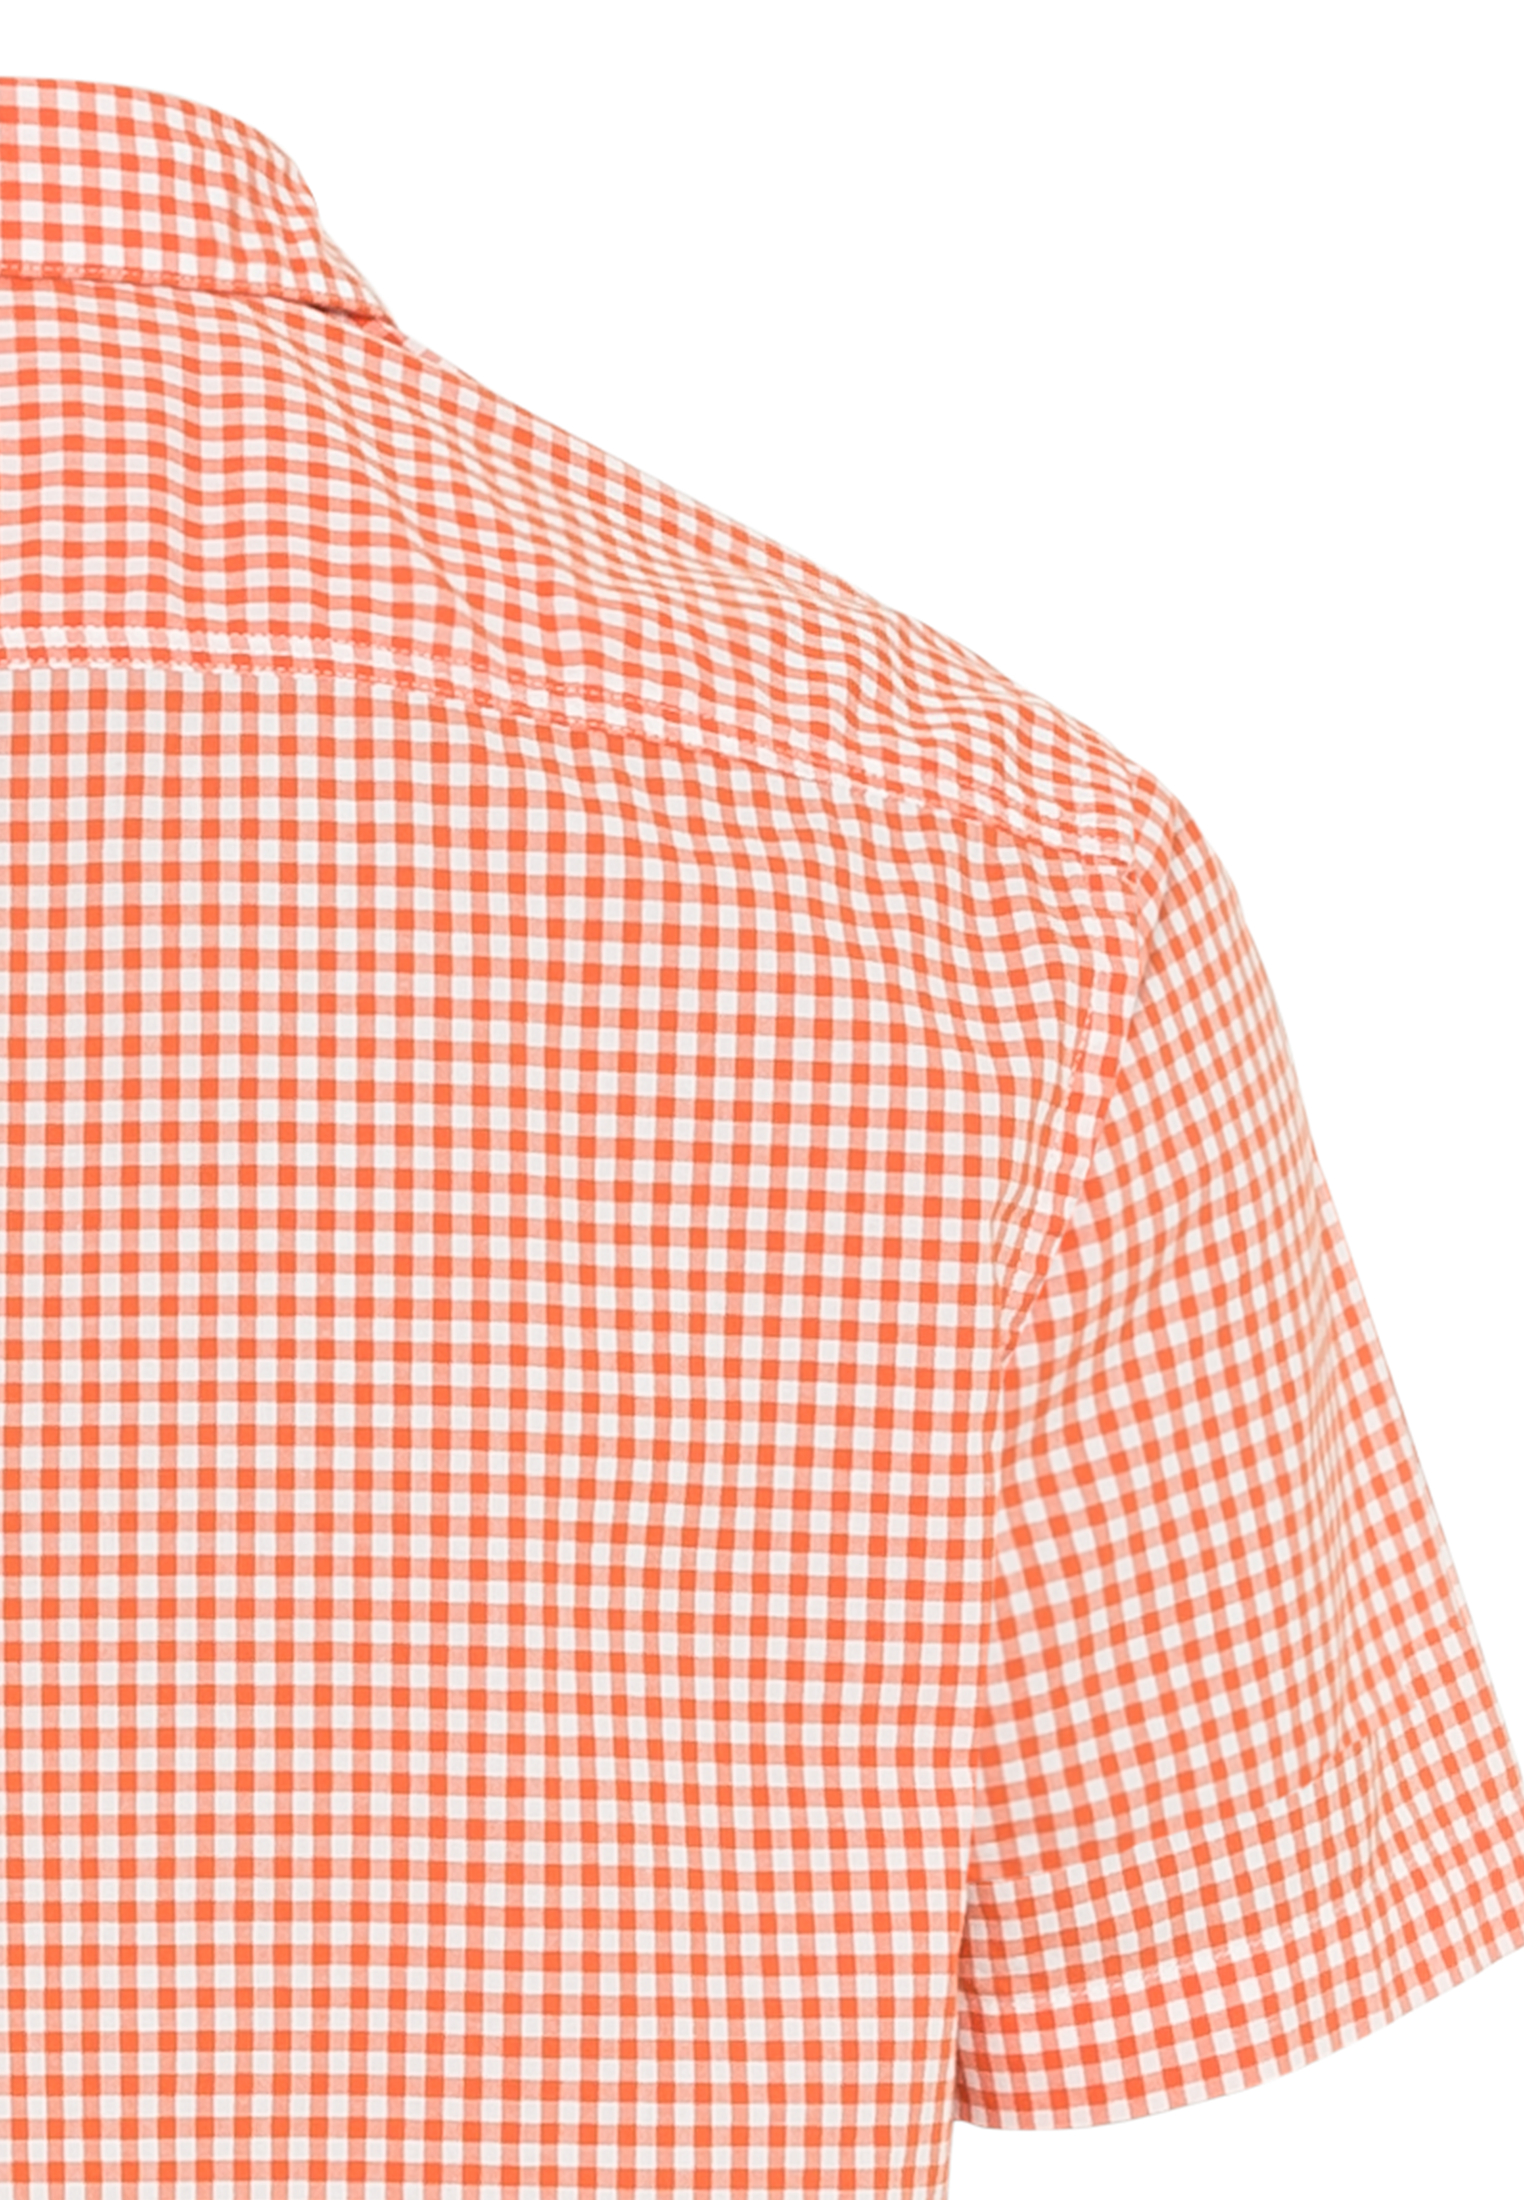 Kurzarm Hemd mit Button-down-Kragen